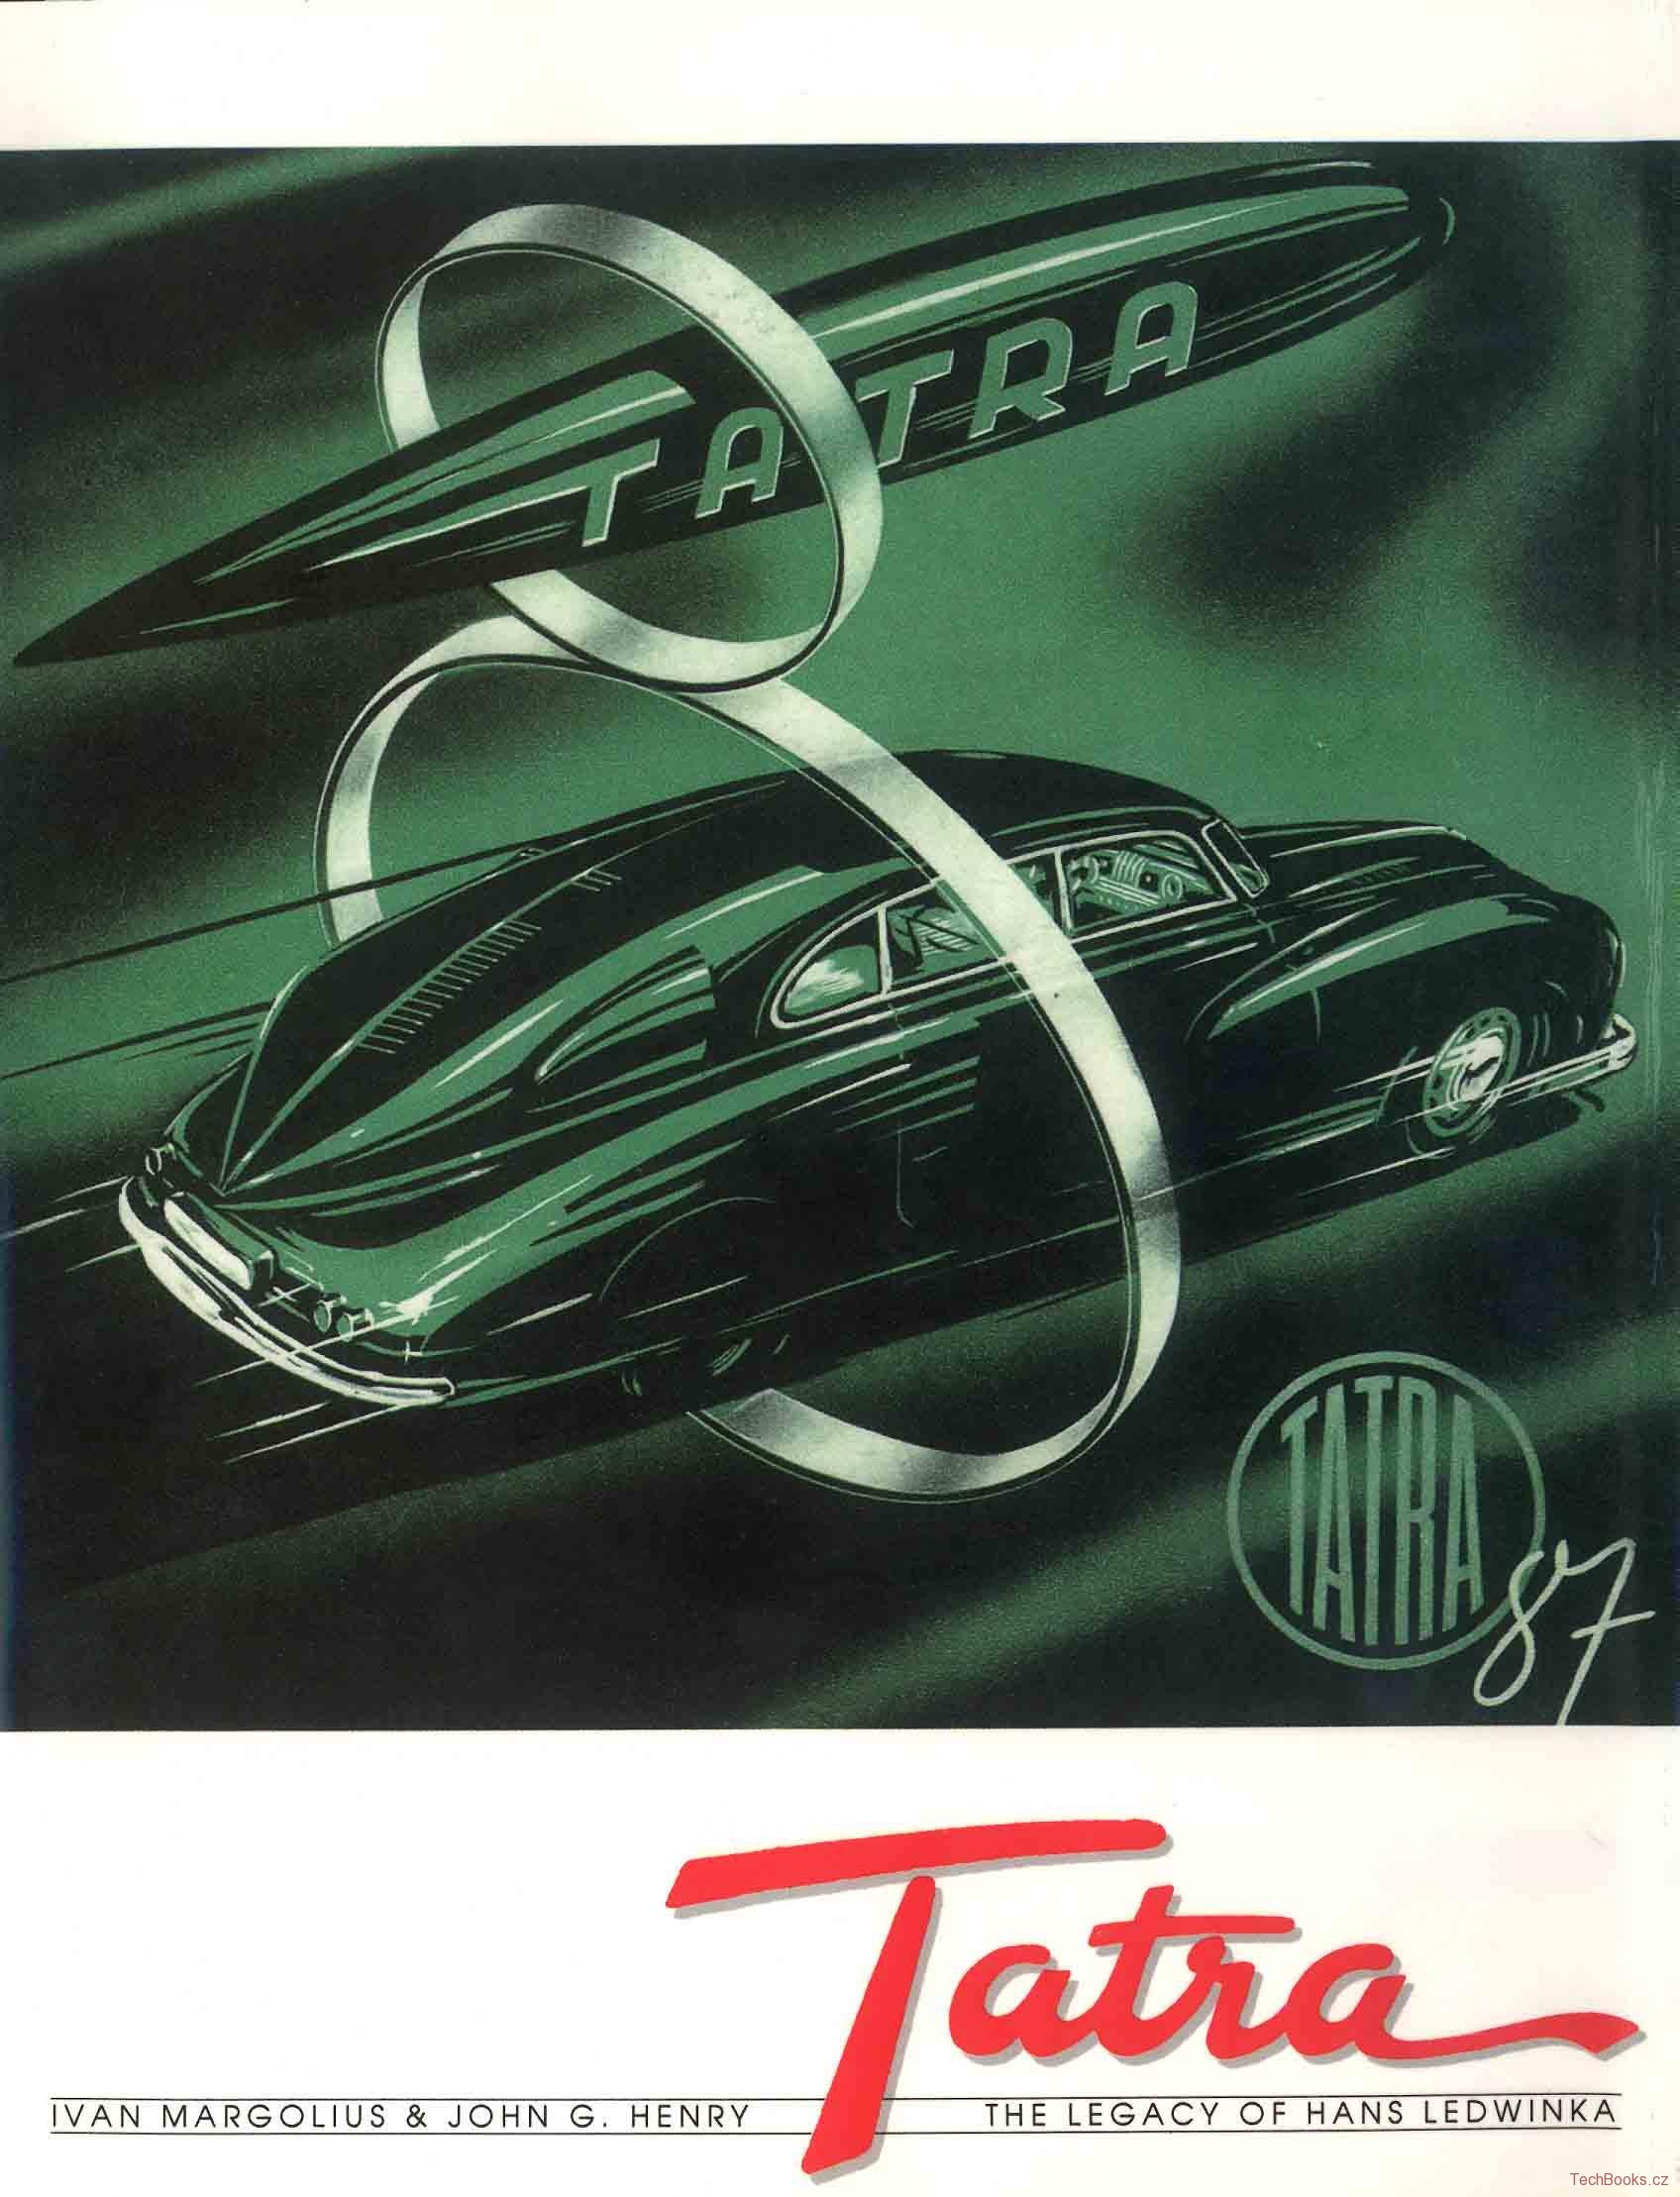 Tatra - The Legacy of Hans Ledwinka (1. vydání, signováno)